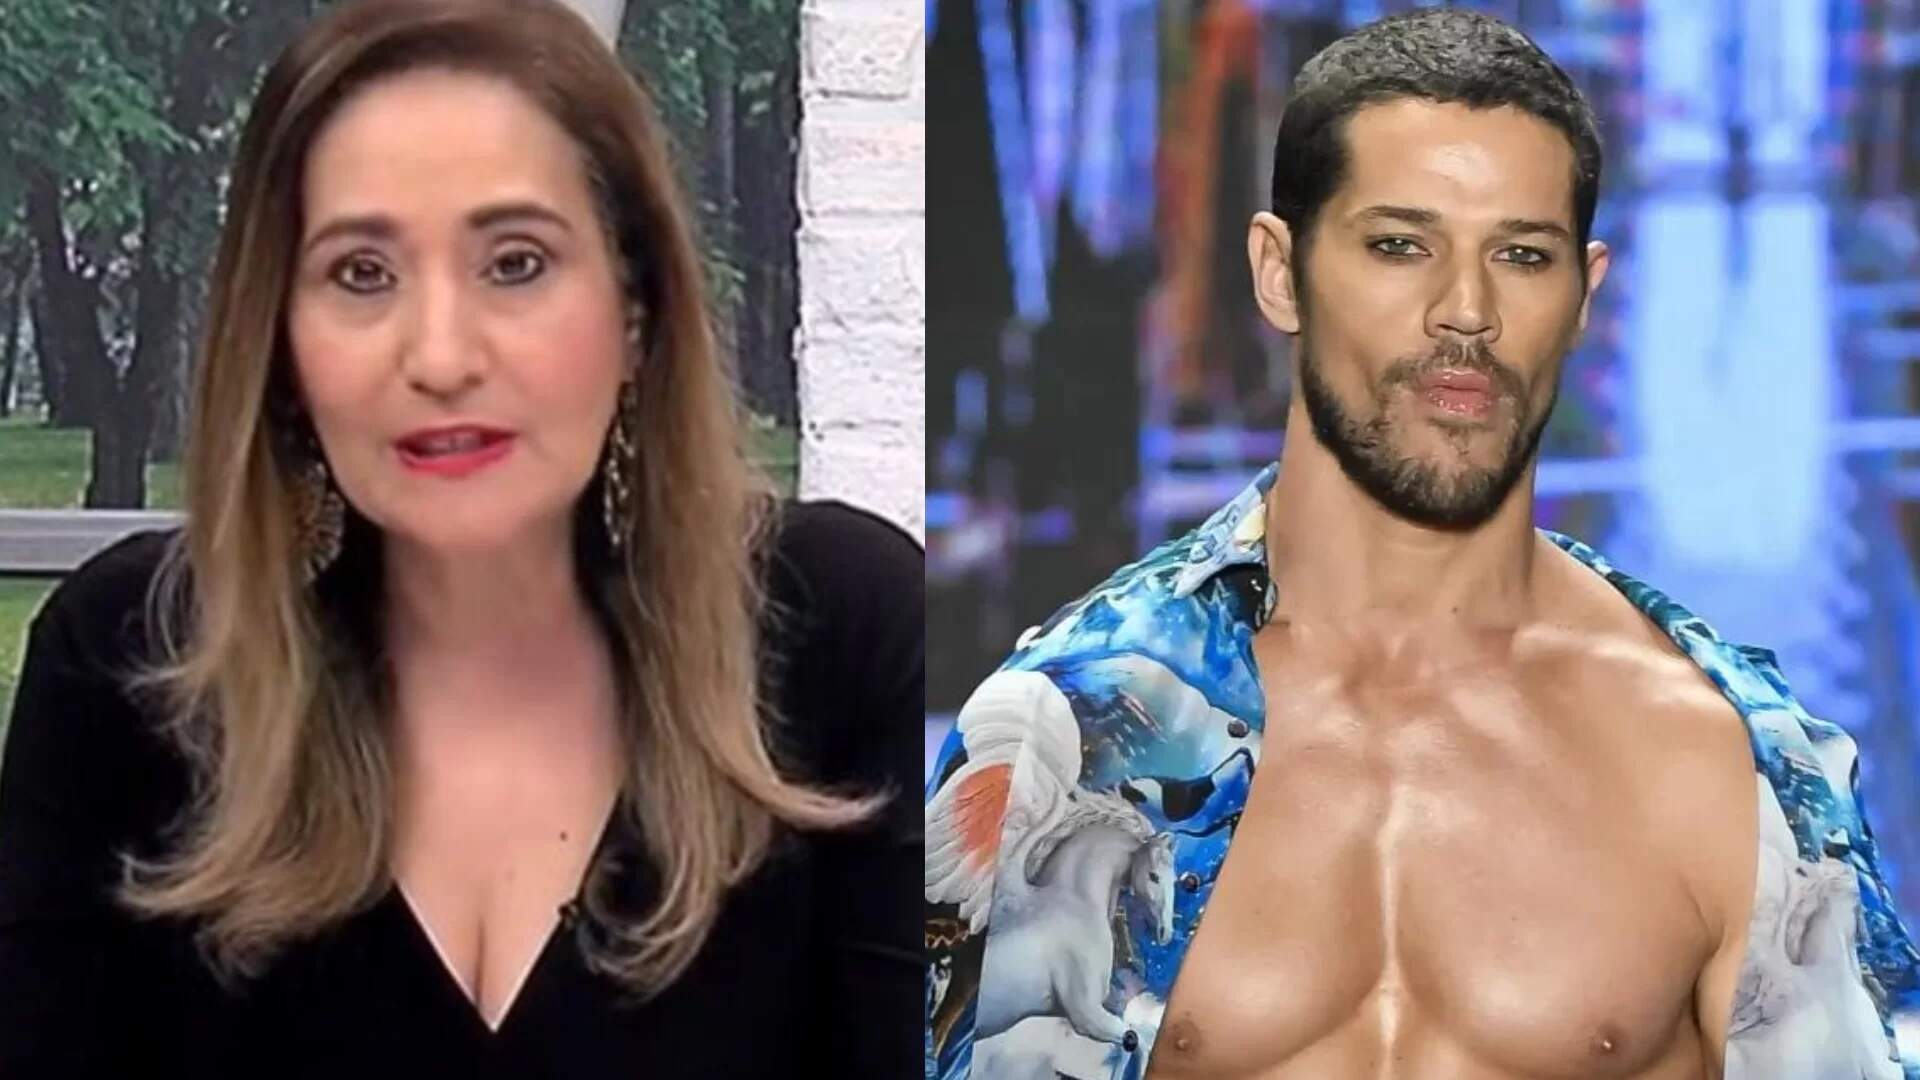 Durante o ‘A Tarde é Sua’, Sônia Abrão detona José Loreto após polêmica envolvendo ex-BBBs